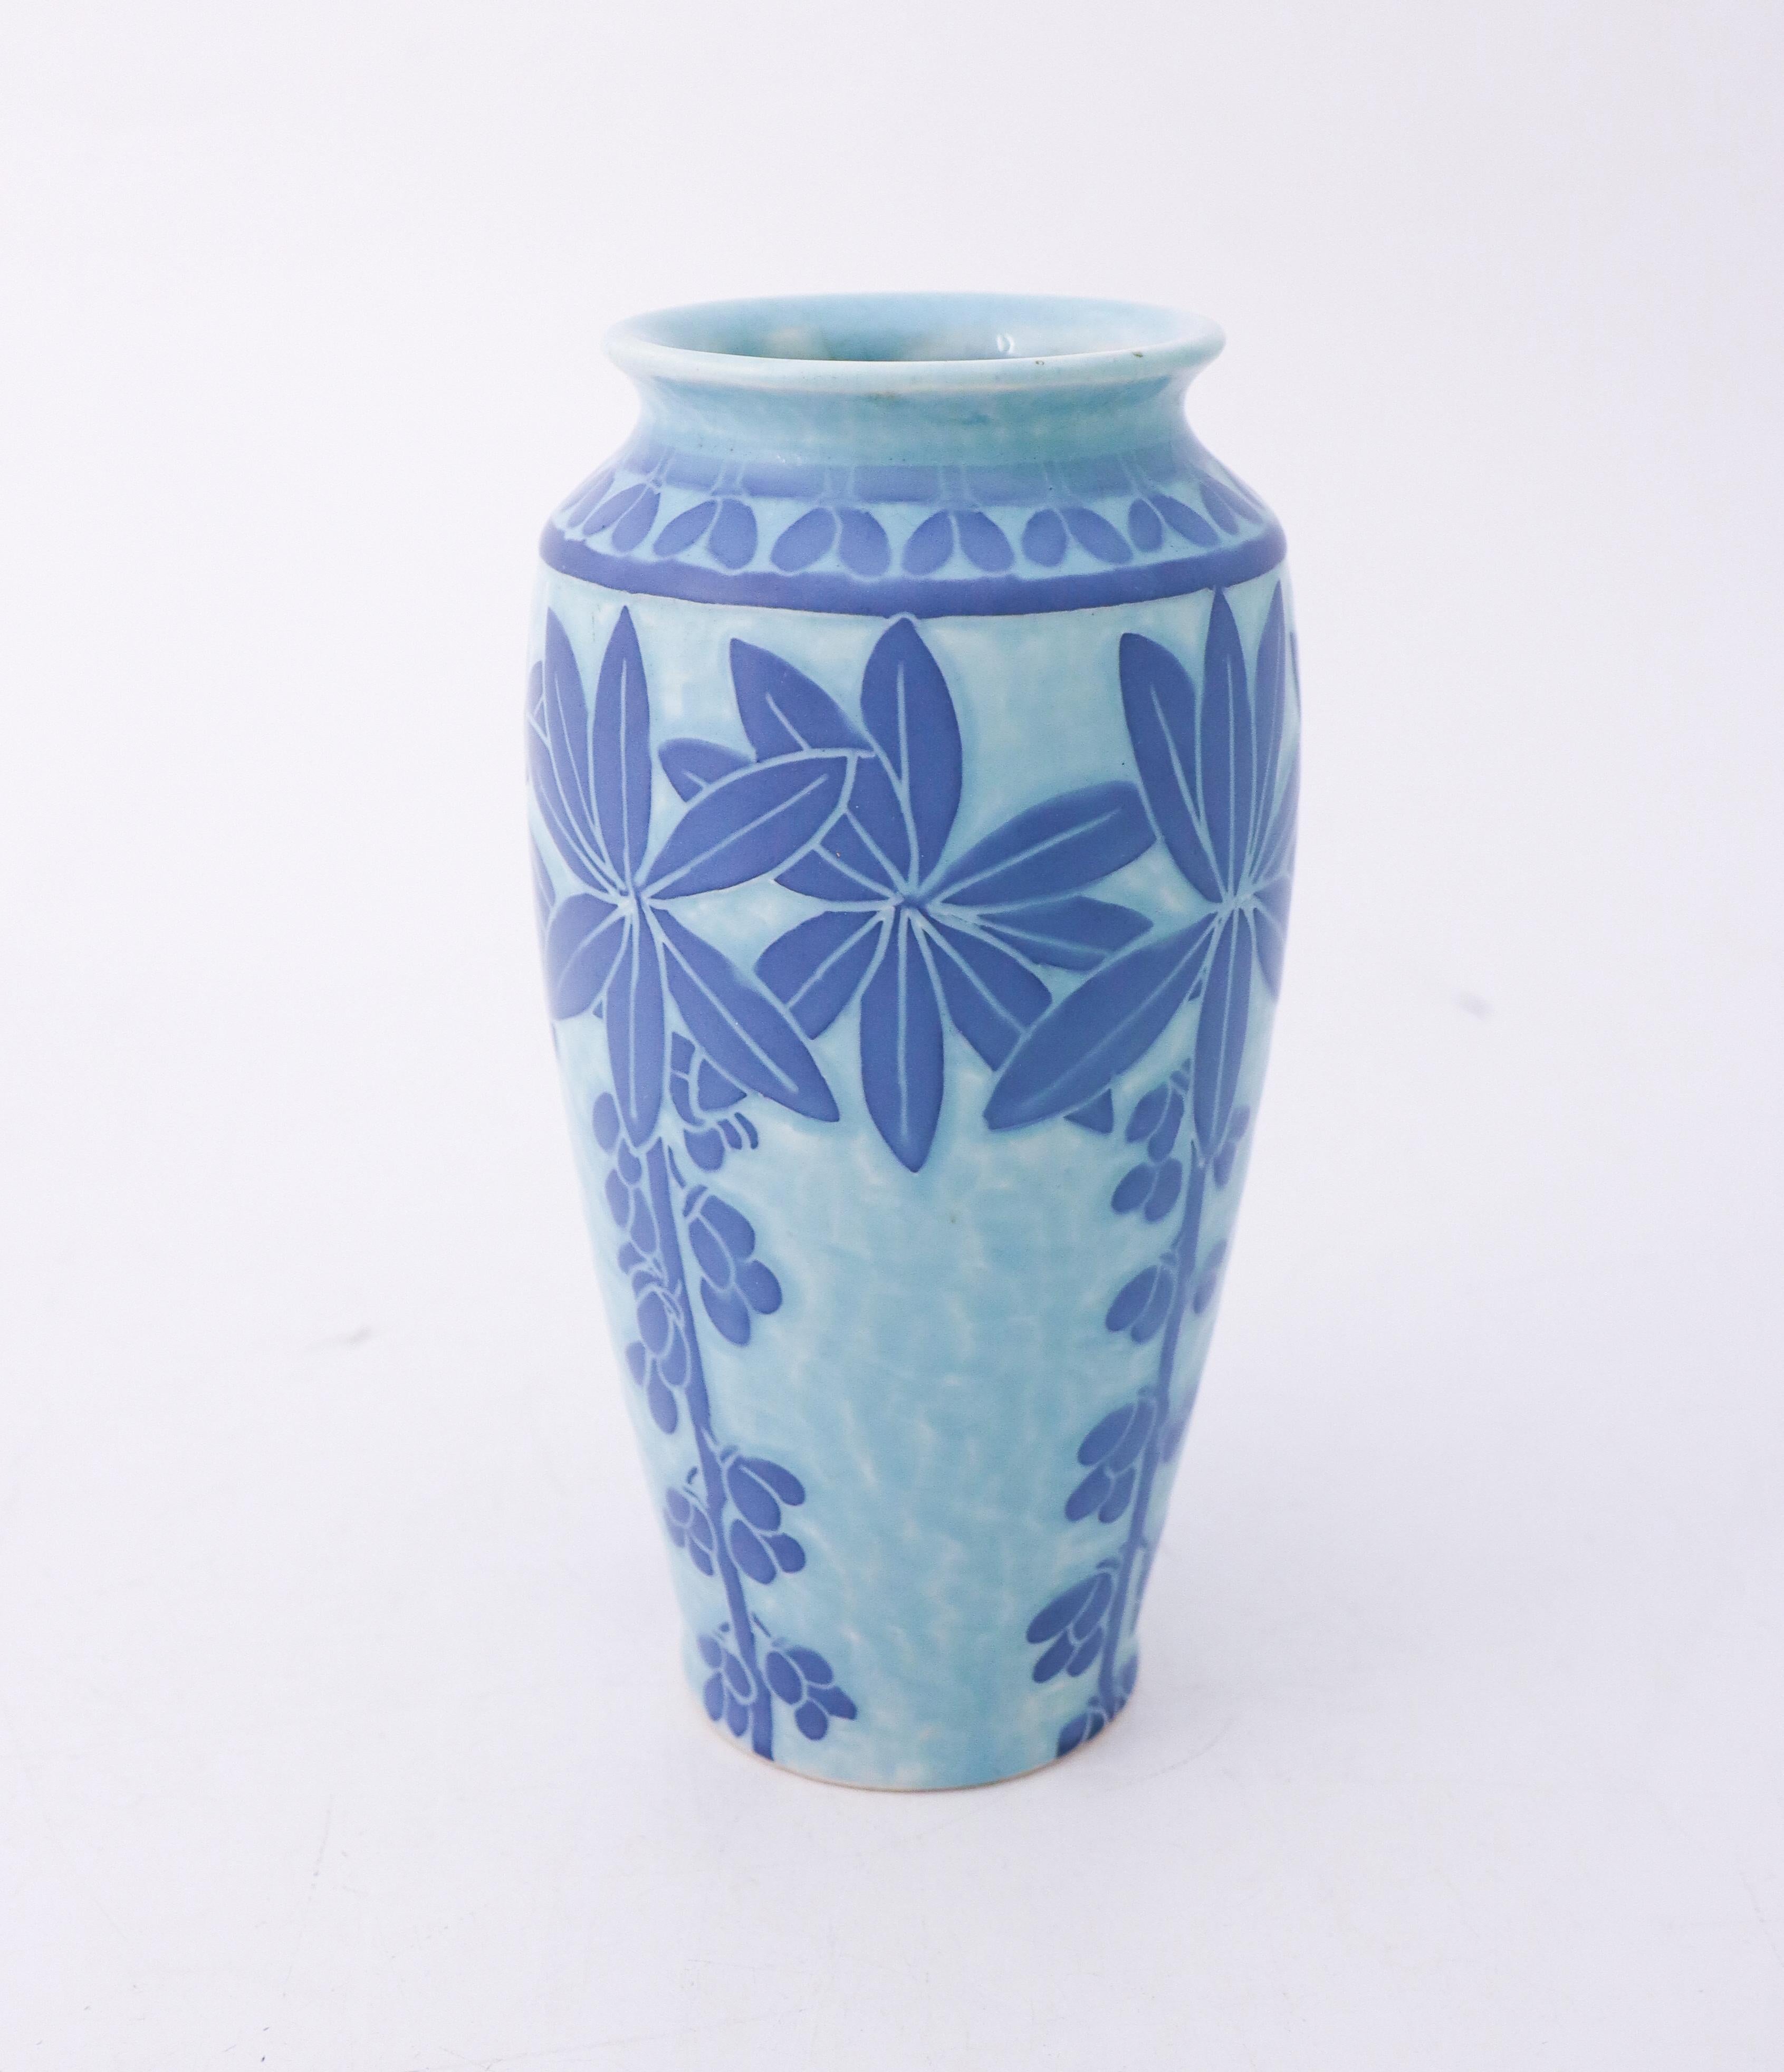 Swedish Art Nouveau Vase Ceramics, Floral Turquoise & Blue, Scandinavian Vintage, 1915